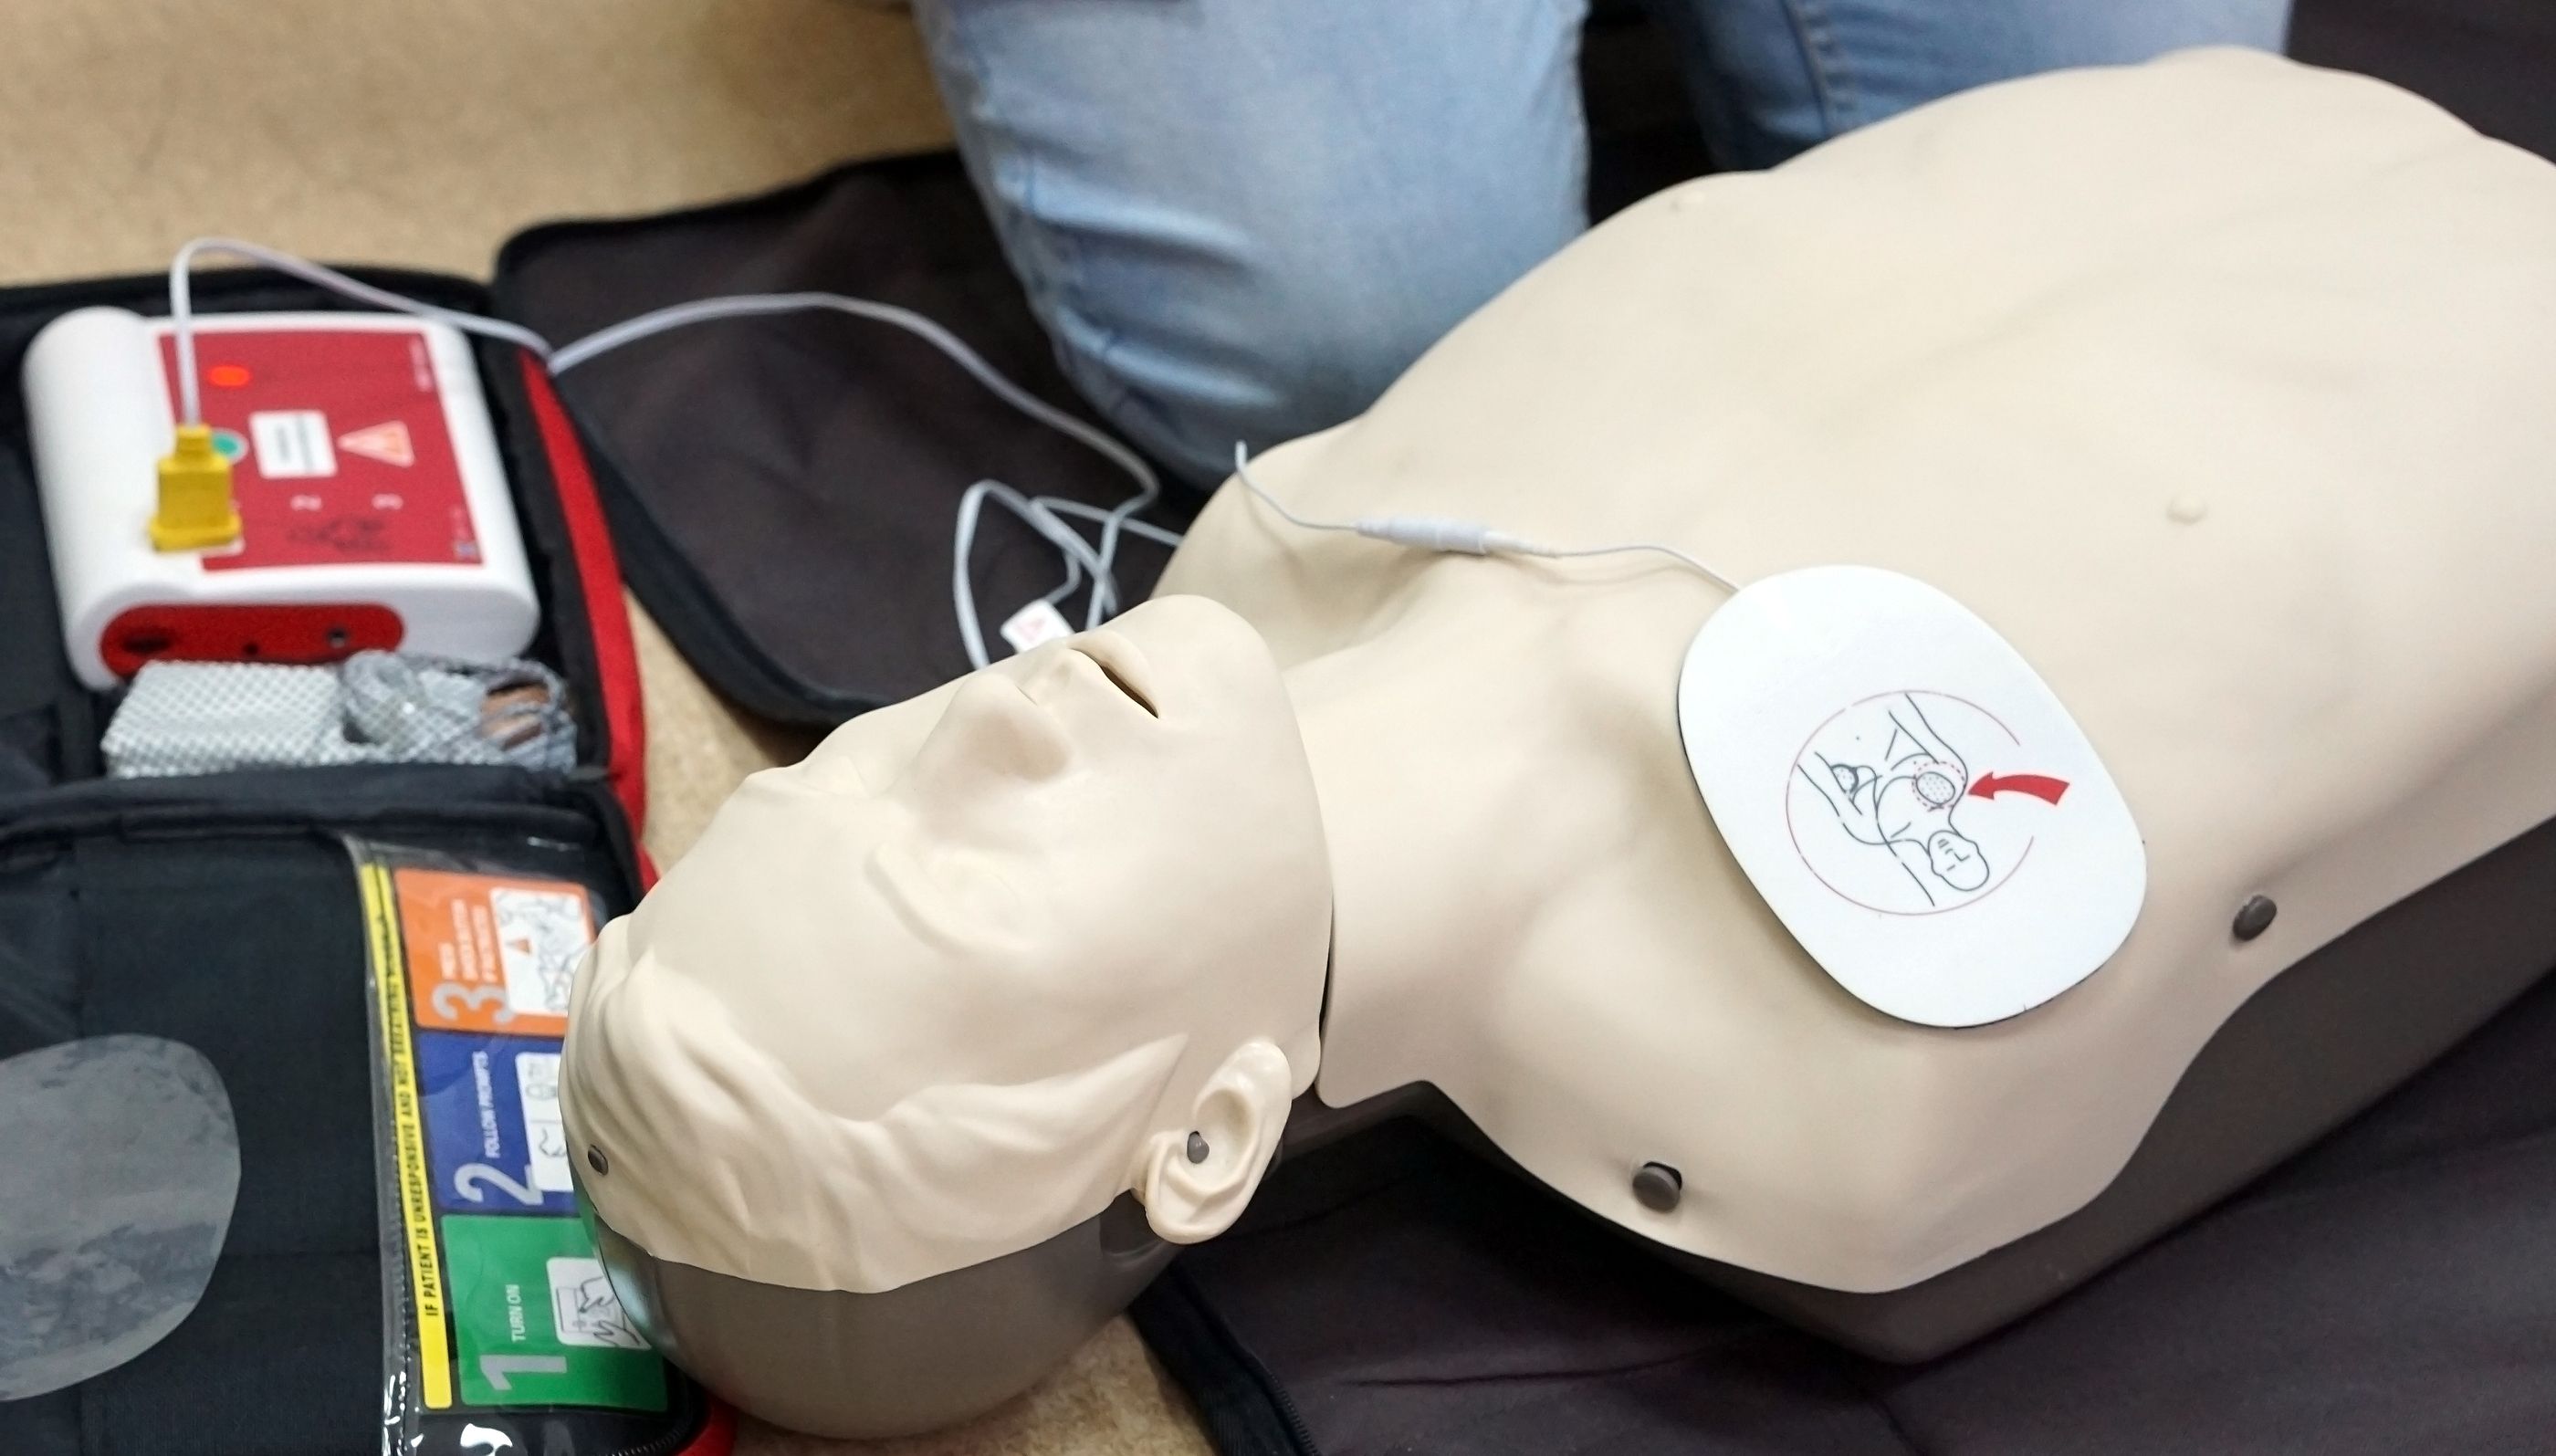 Un asistente de voz ayuda en la práctica de maniobras de reanimación cardiorrespiratoria